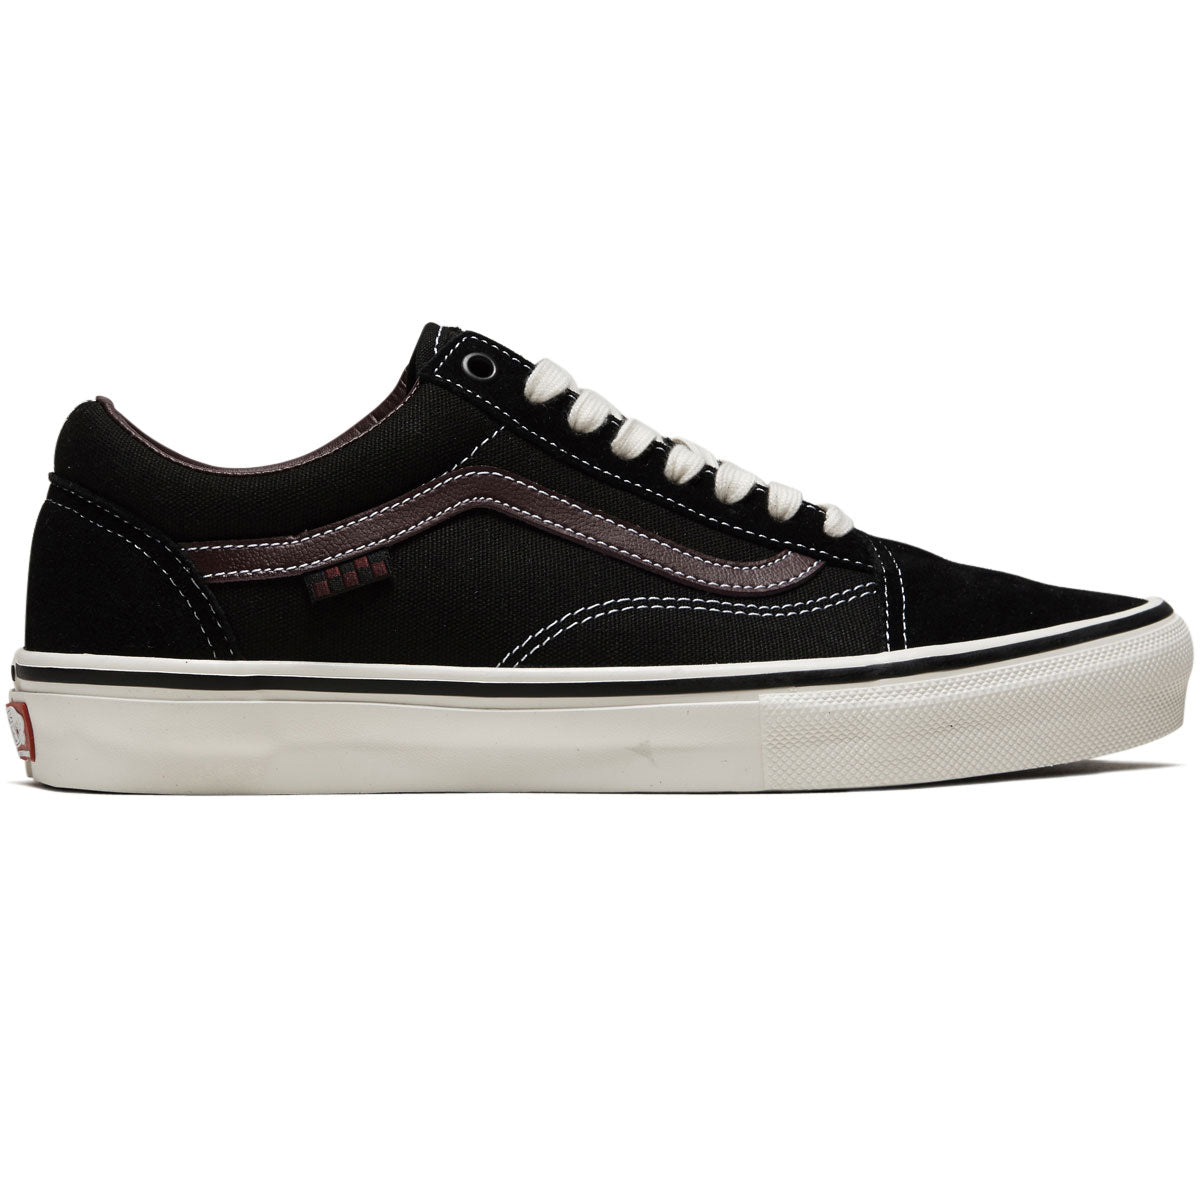 Vans Skate Old Skool Shoes - Jill Perkins Black/Burgundy – CCS